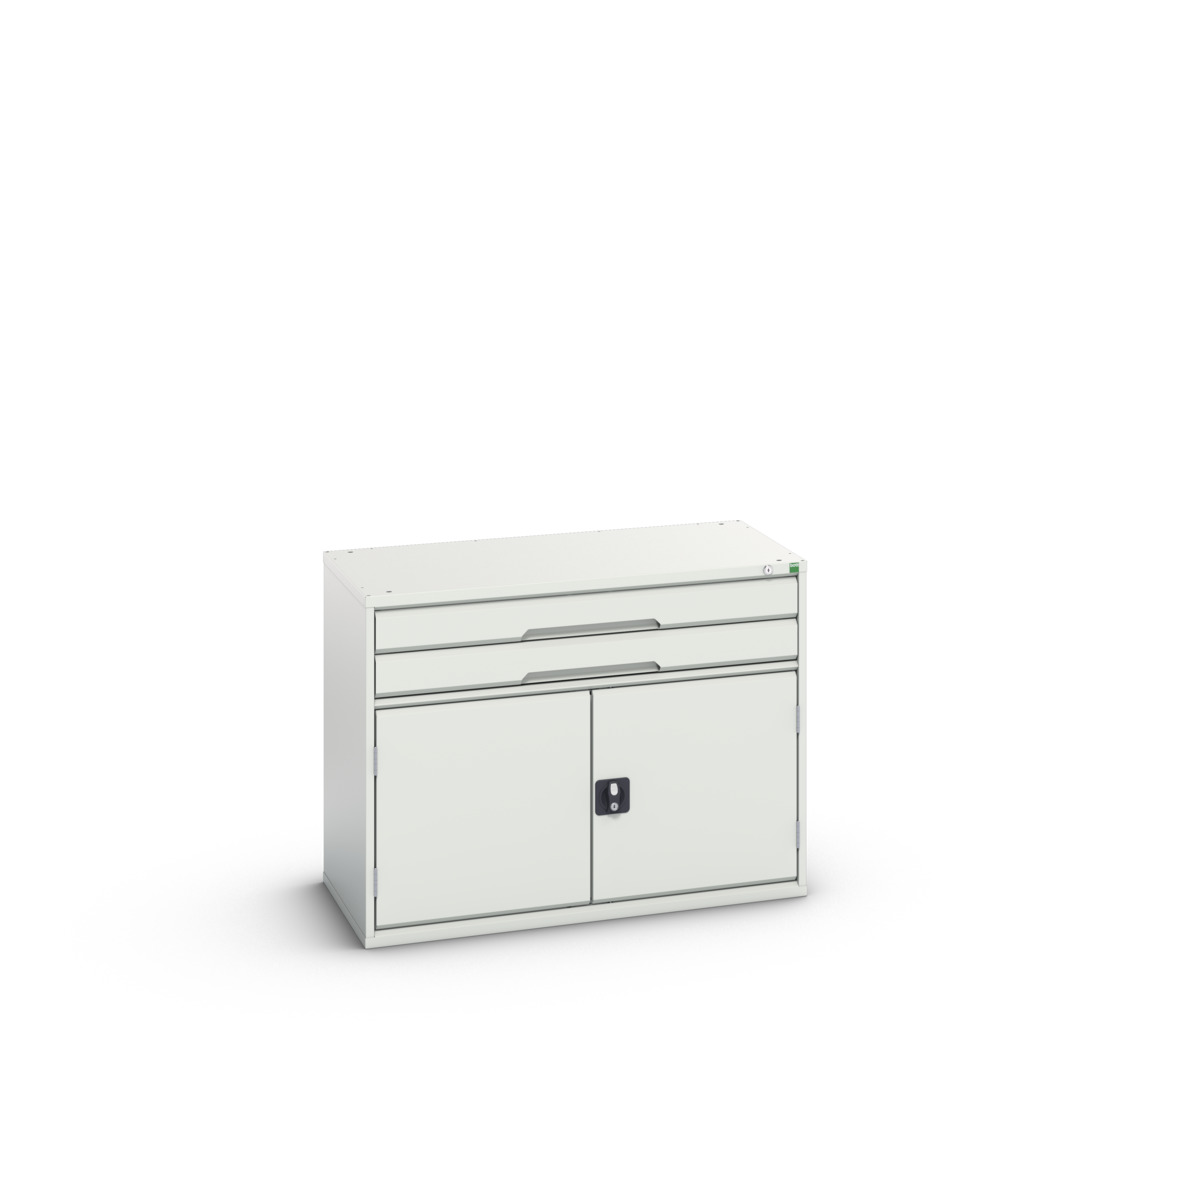 16925516.16 - verso drawer-door cabinet